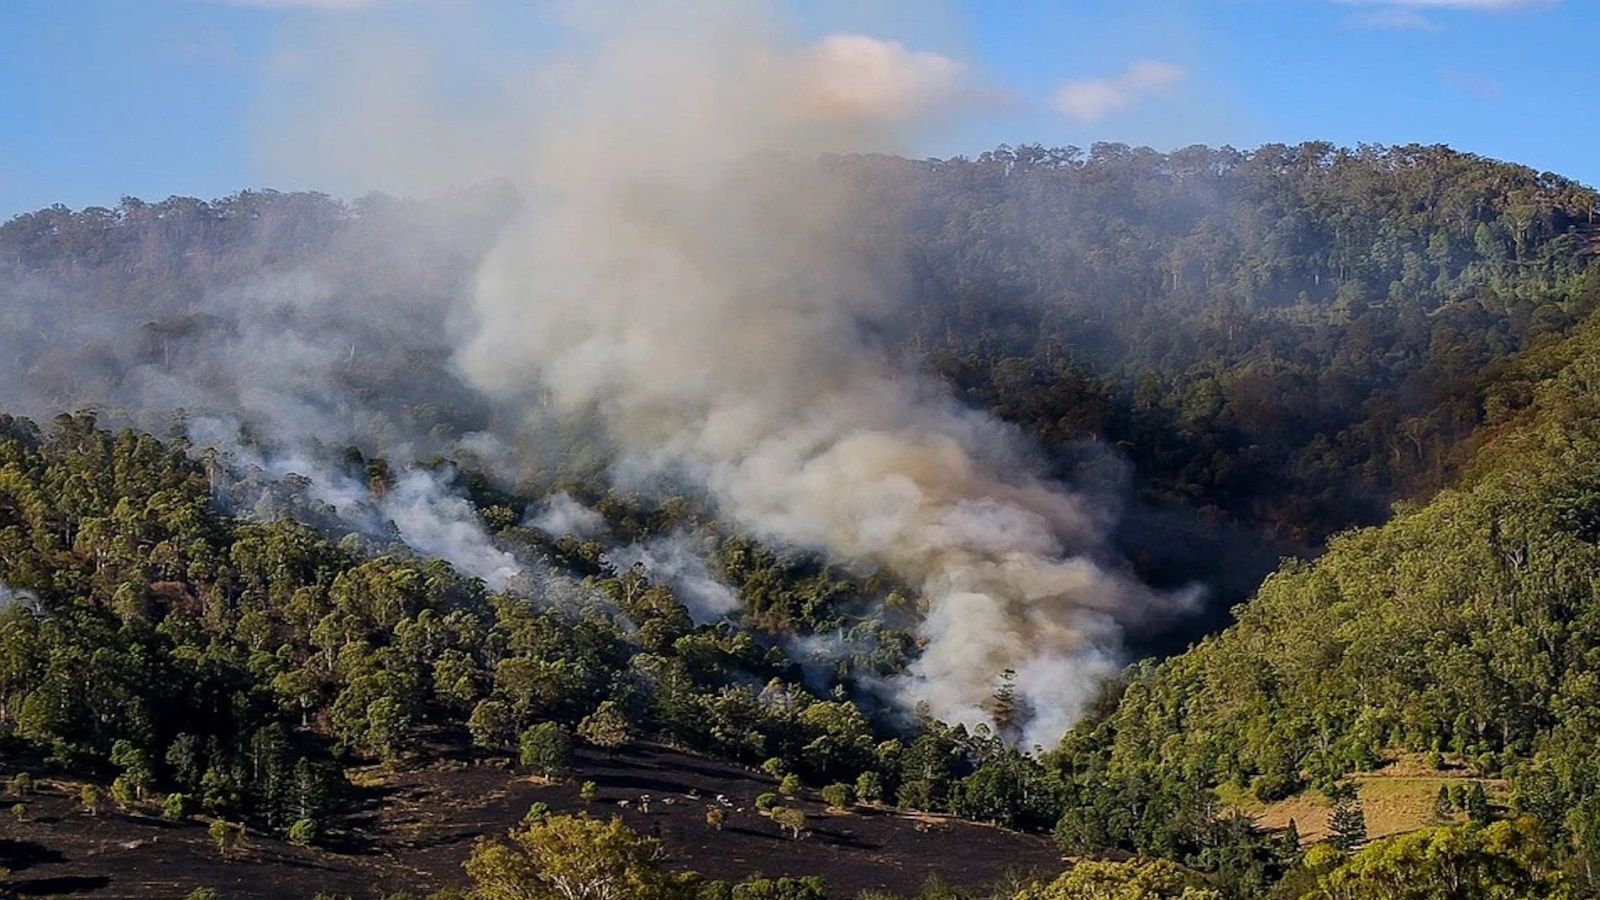 ‪خرجت حرائق الغابات في أستراليا عن السيطرة ودمرت ملايين الفدانات (بيكسابي)‬ خرجت حرائق الغابات في أستراليا عن السيطرة ودمرت ملايين الفدانات (بيكسابي)